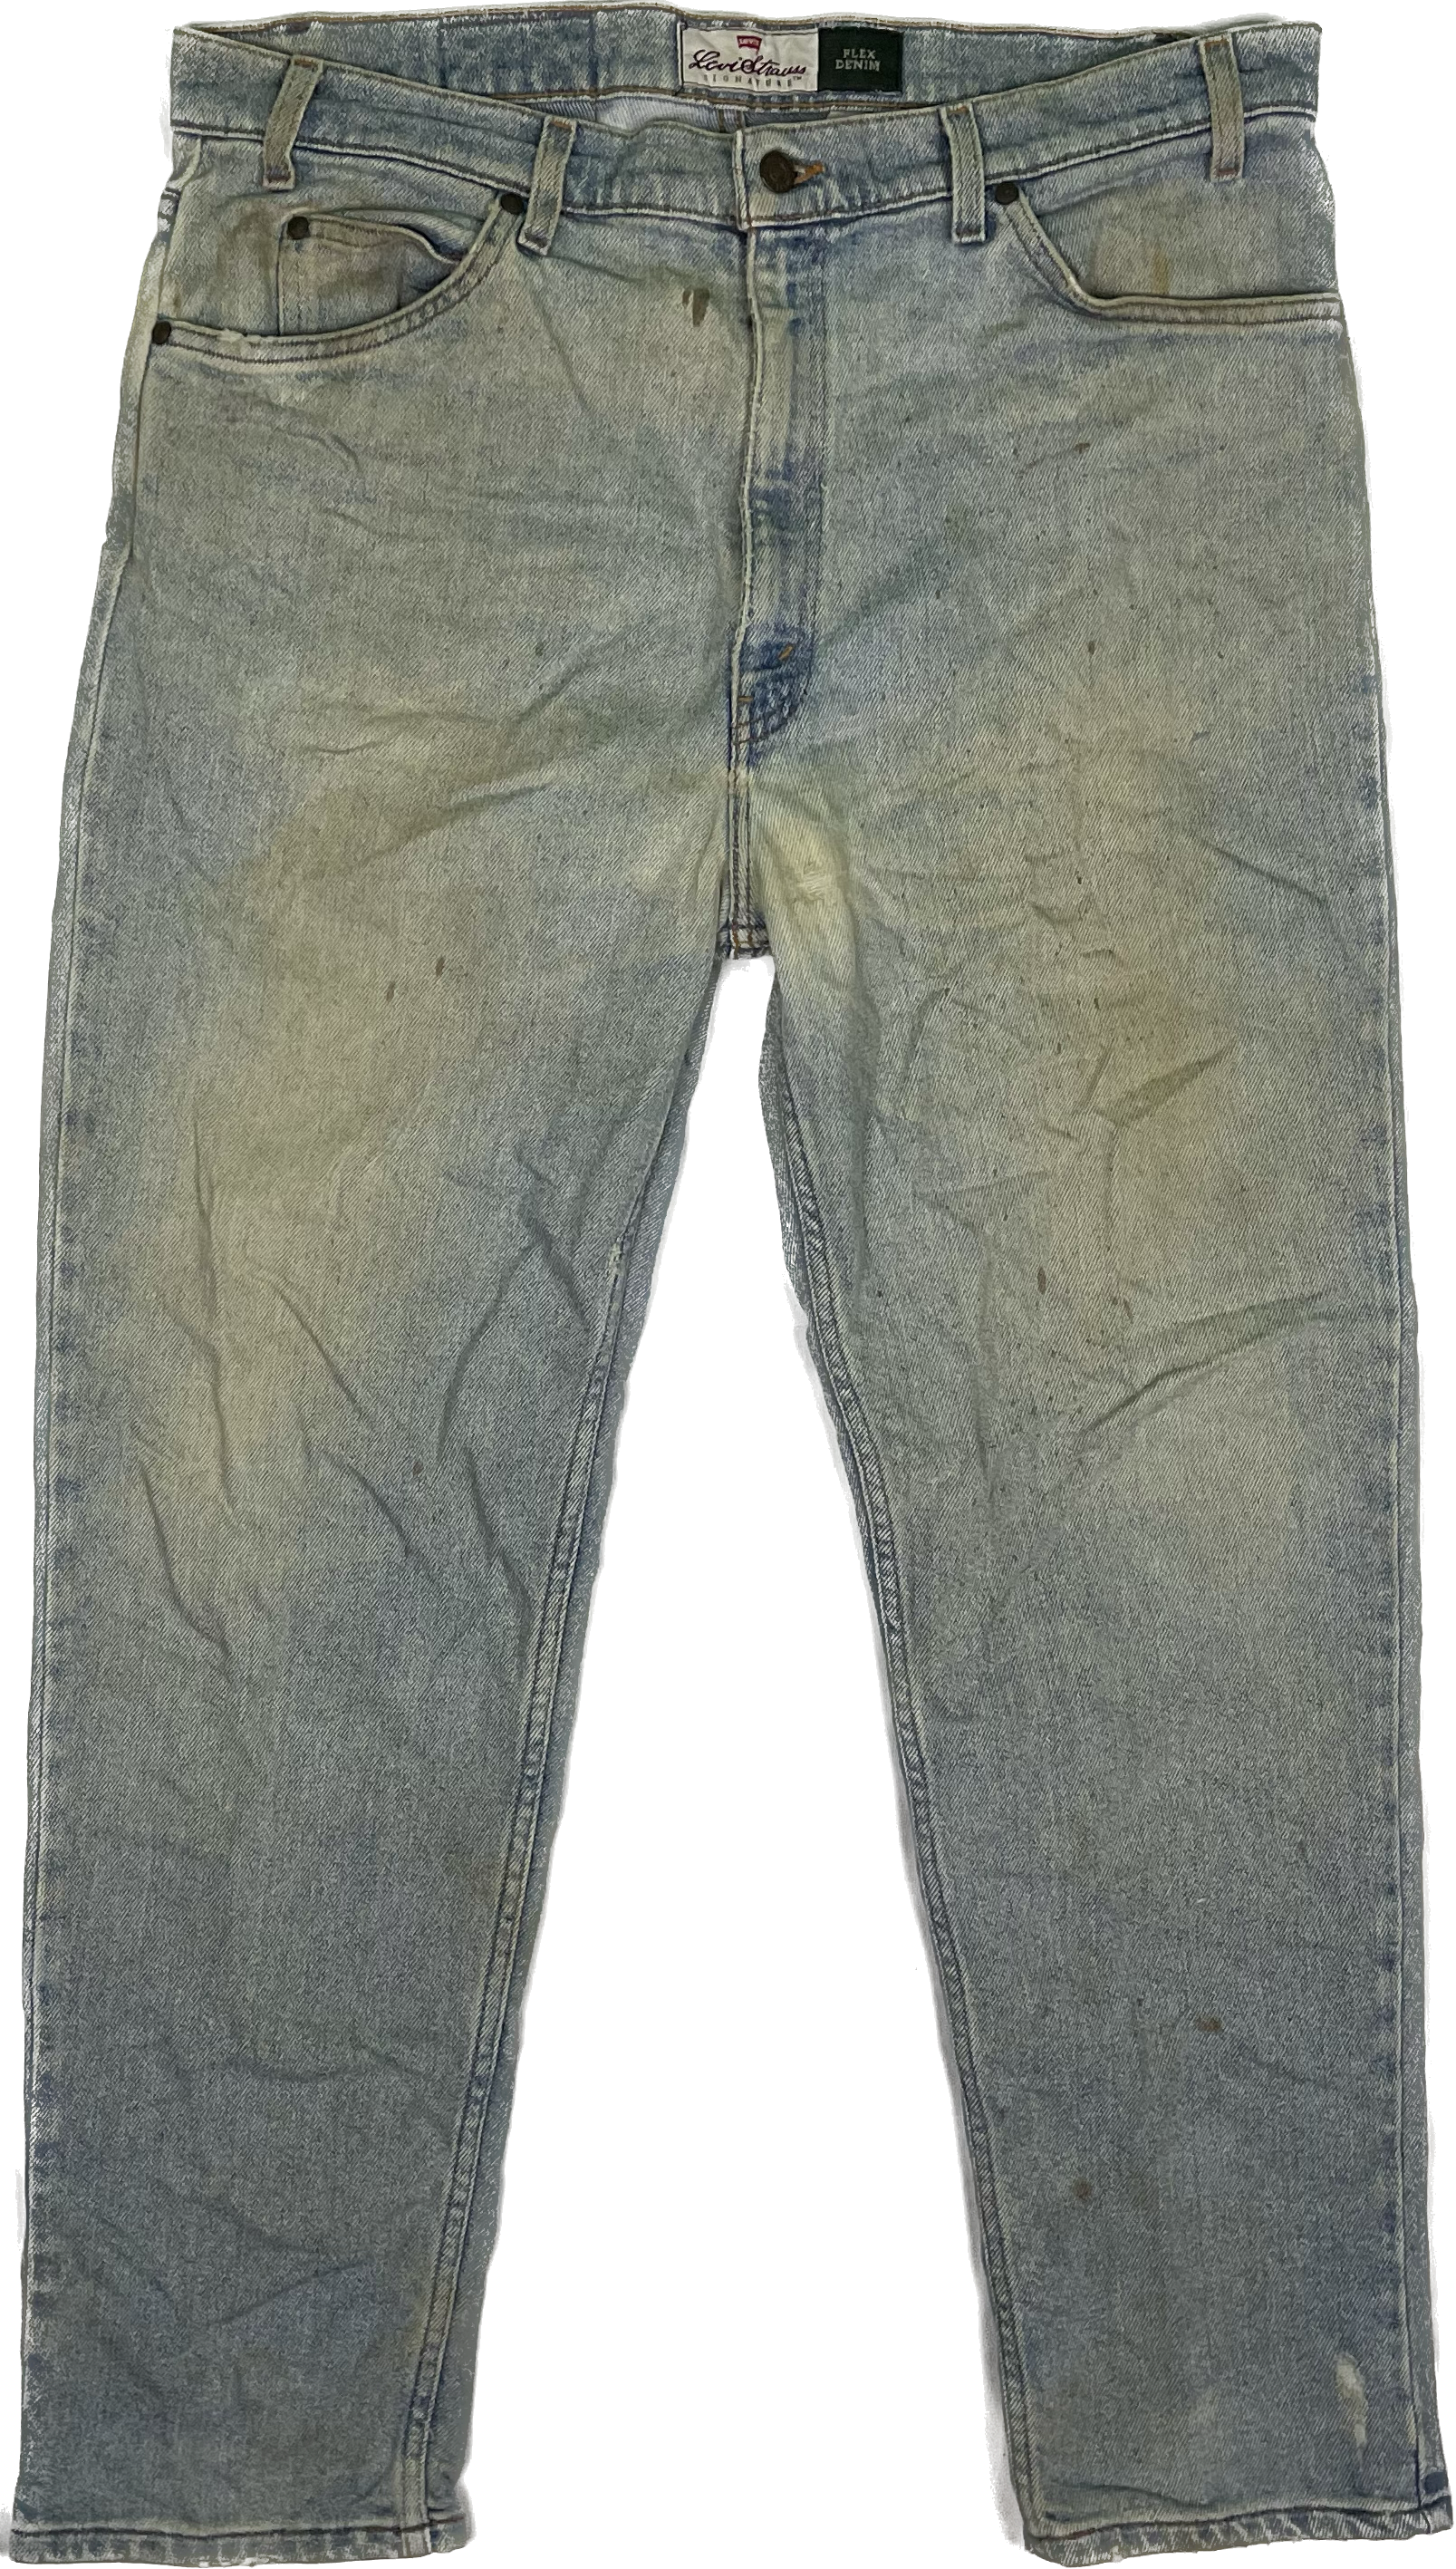 95&#39; Levis 540 Distressed Look Vintage Jeans